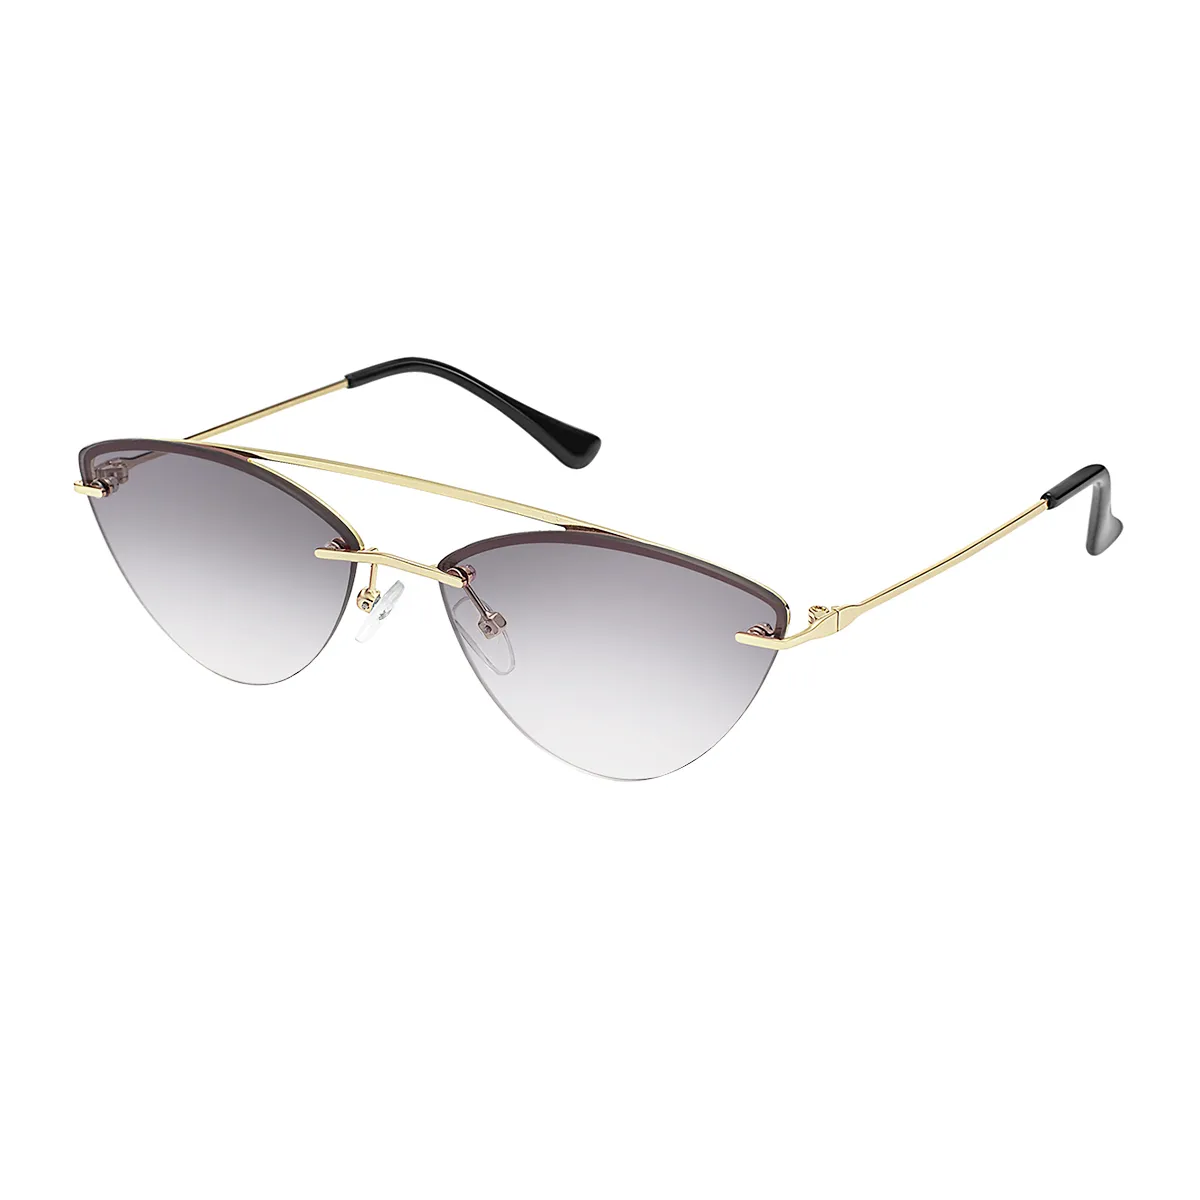 Lisbeth - Cat-eye Gold Sunglasses for Women